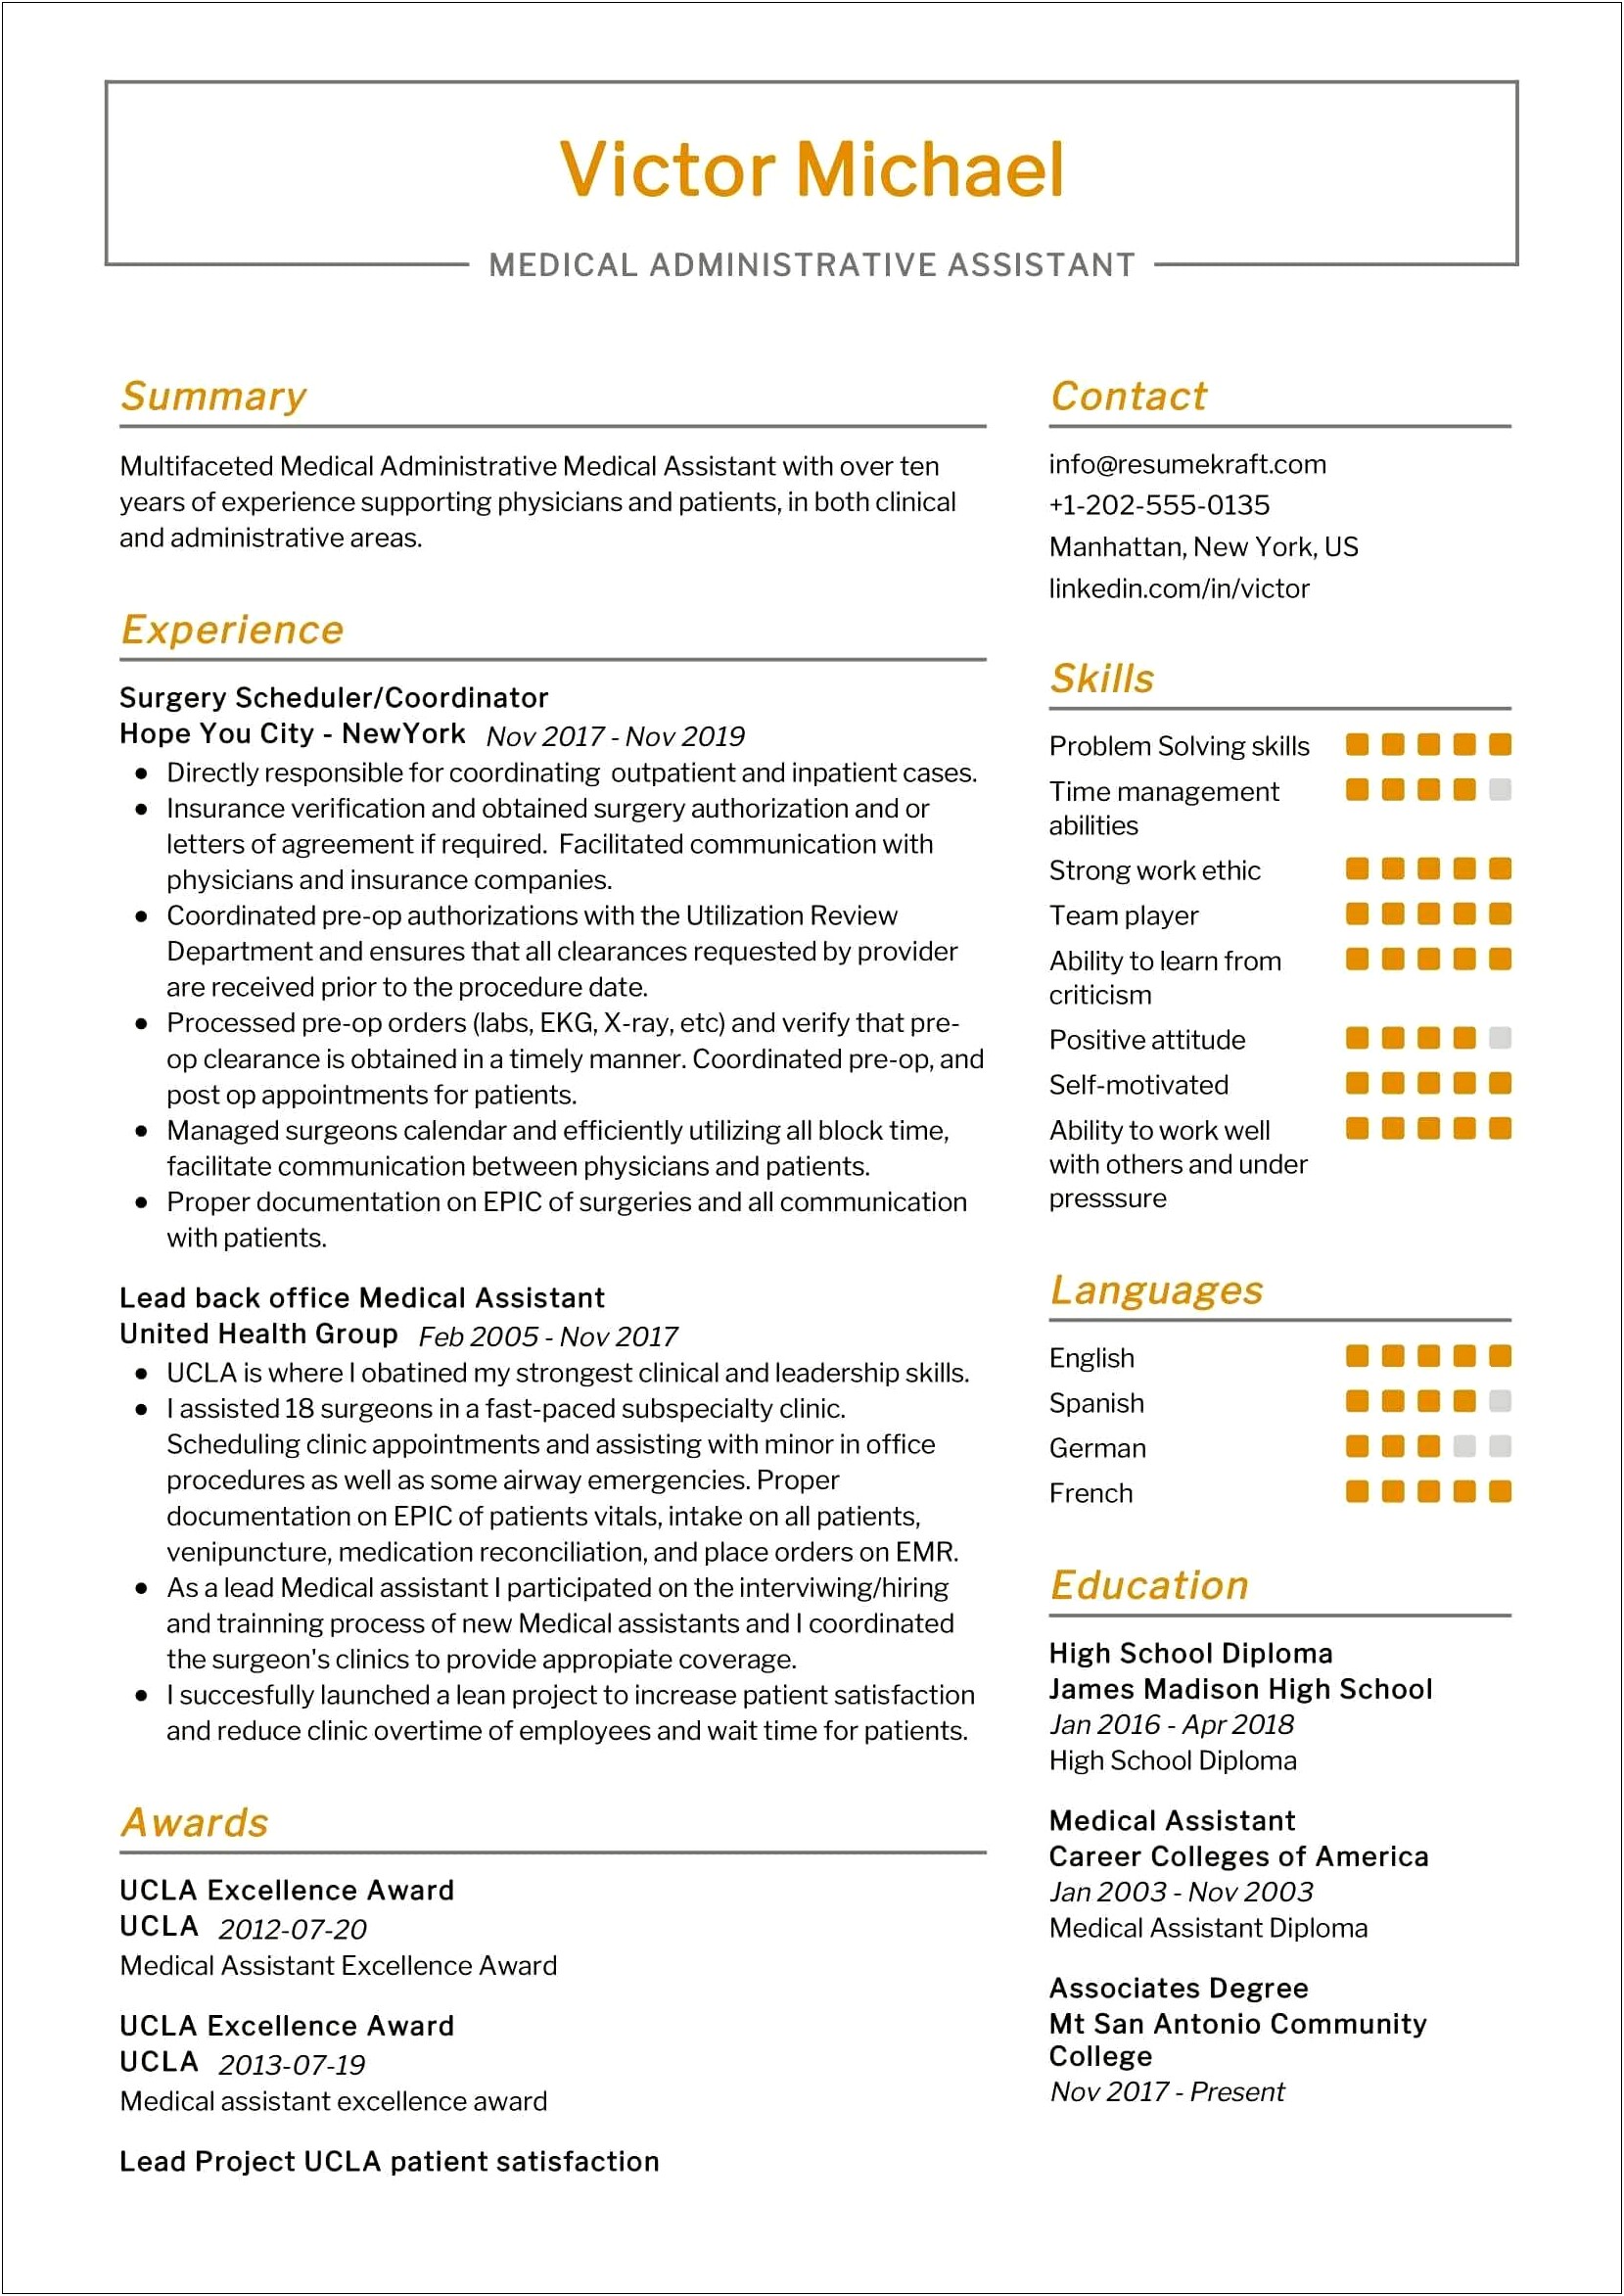 Medical Administrative Assistant Job Description Resume